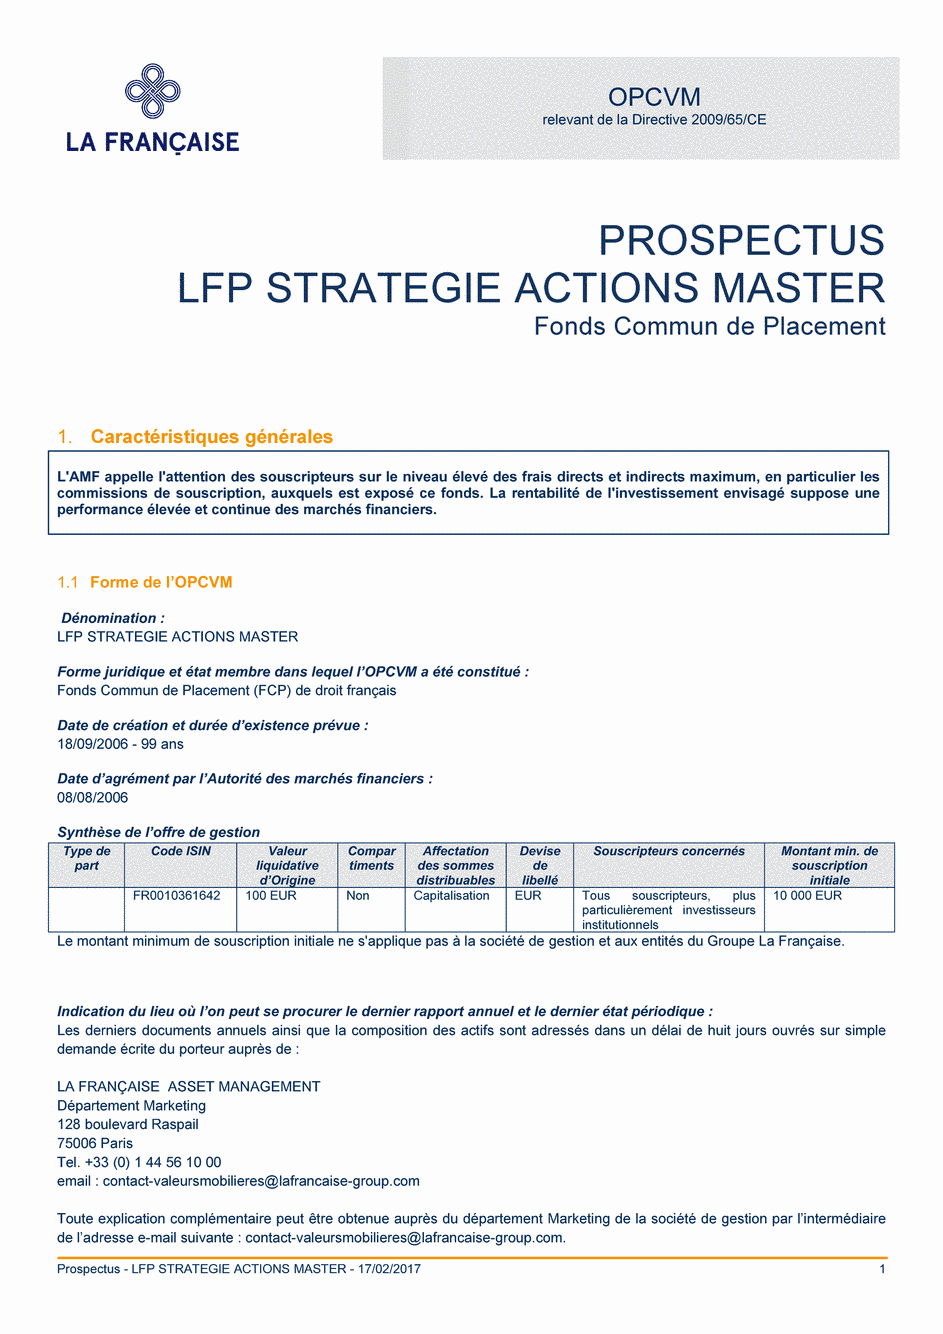 Prospectus LFP Strategie Actions Master - 17/02/2017 - Français